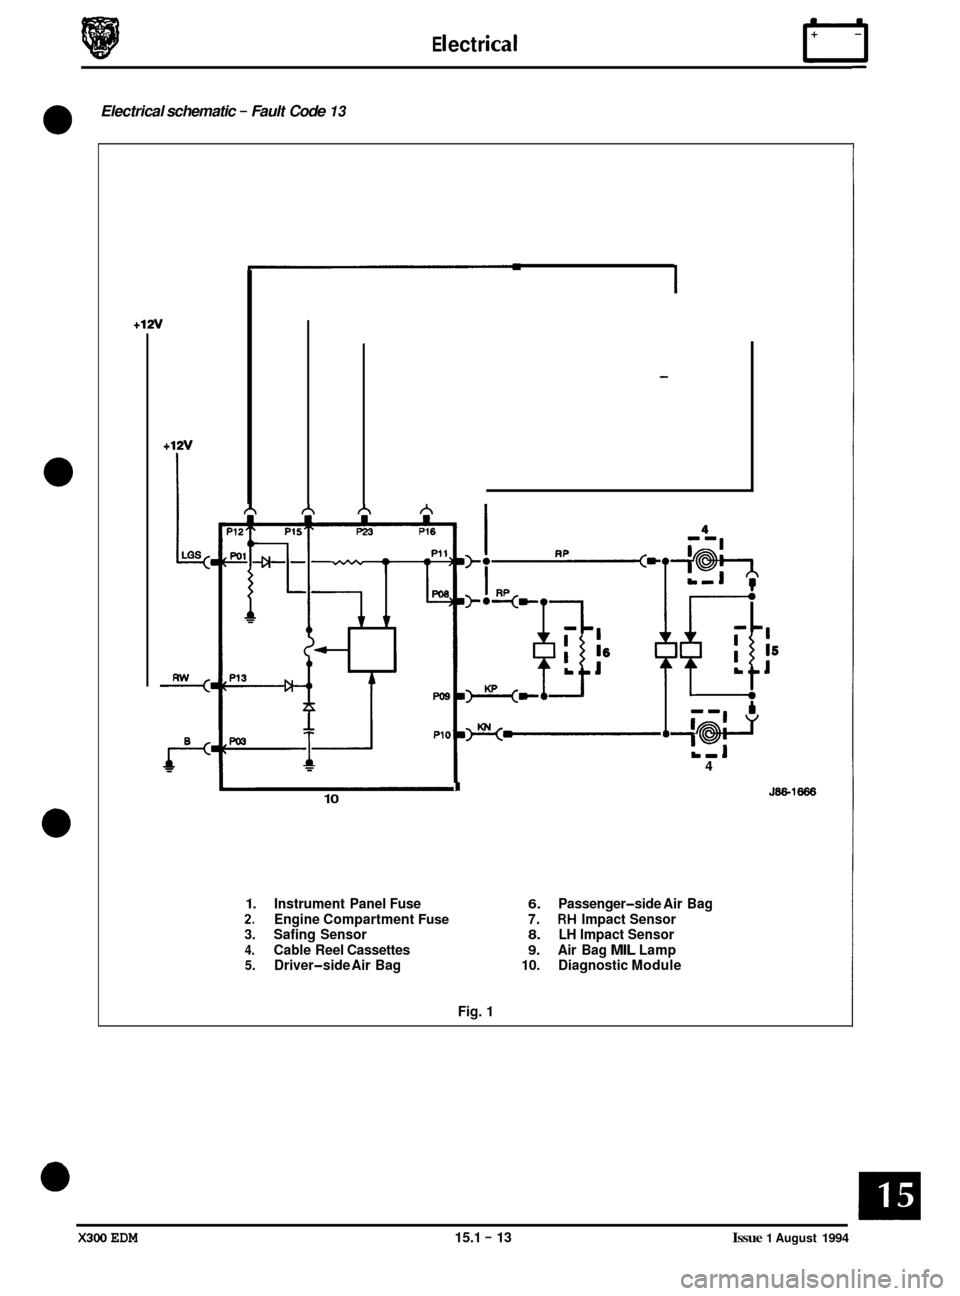 JAGUAR XJ6 1994 2.G Electrical Diagnostic Manual E I ect r ical n 
- 
Electrical schematic - Fault Code 13 
0 
0 
0 
+12v 
+12v 
I_i 
I 10 
4 
1. Instrument  Panel  Fuse 6. Passenger-side Air  Bag 
2. Engine  Compartment Fuse 7. RH Impact Sensor 
3.